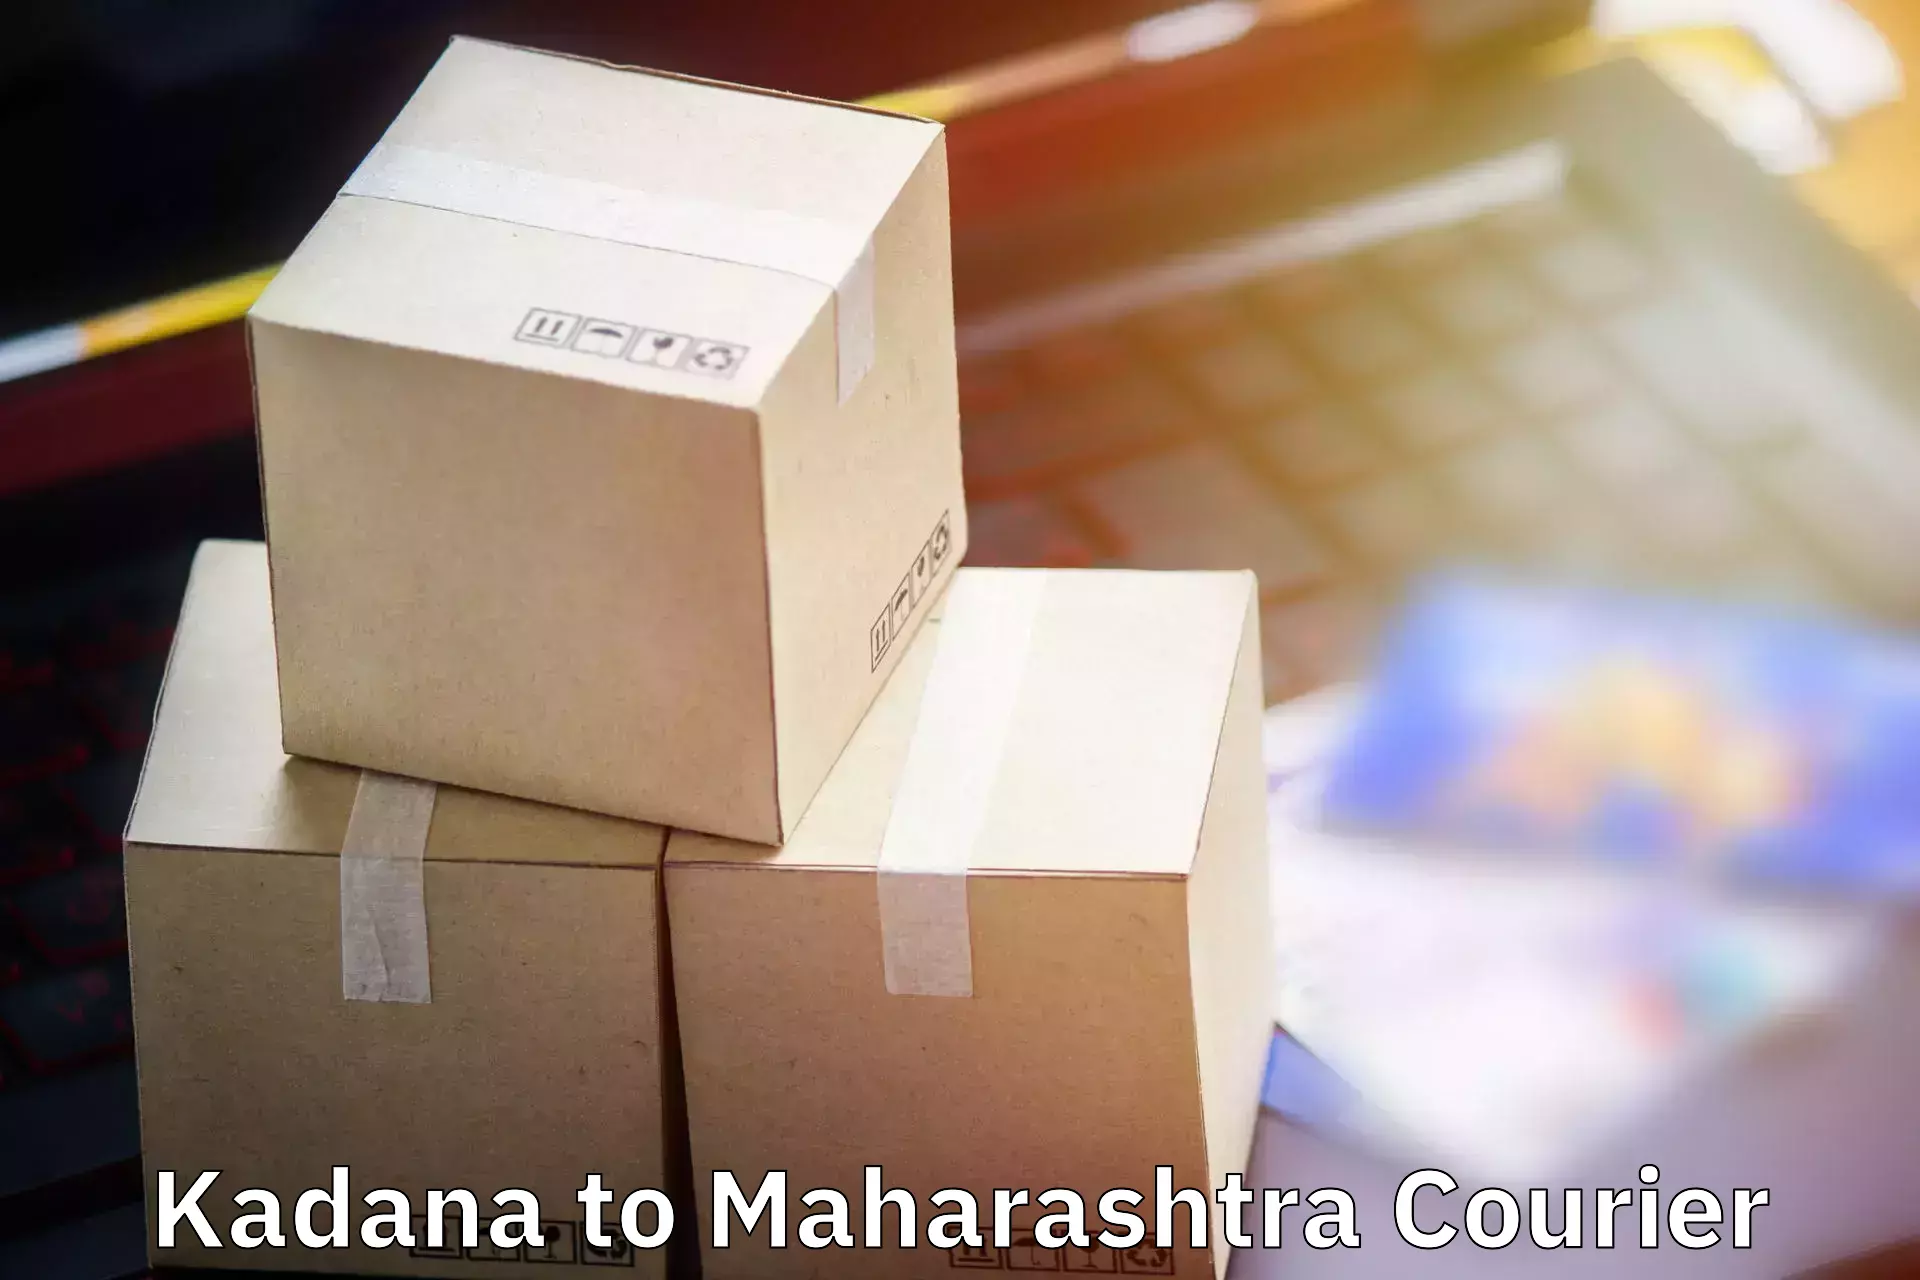 Luggage delivery network Kadana to Paratwada